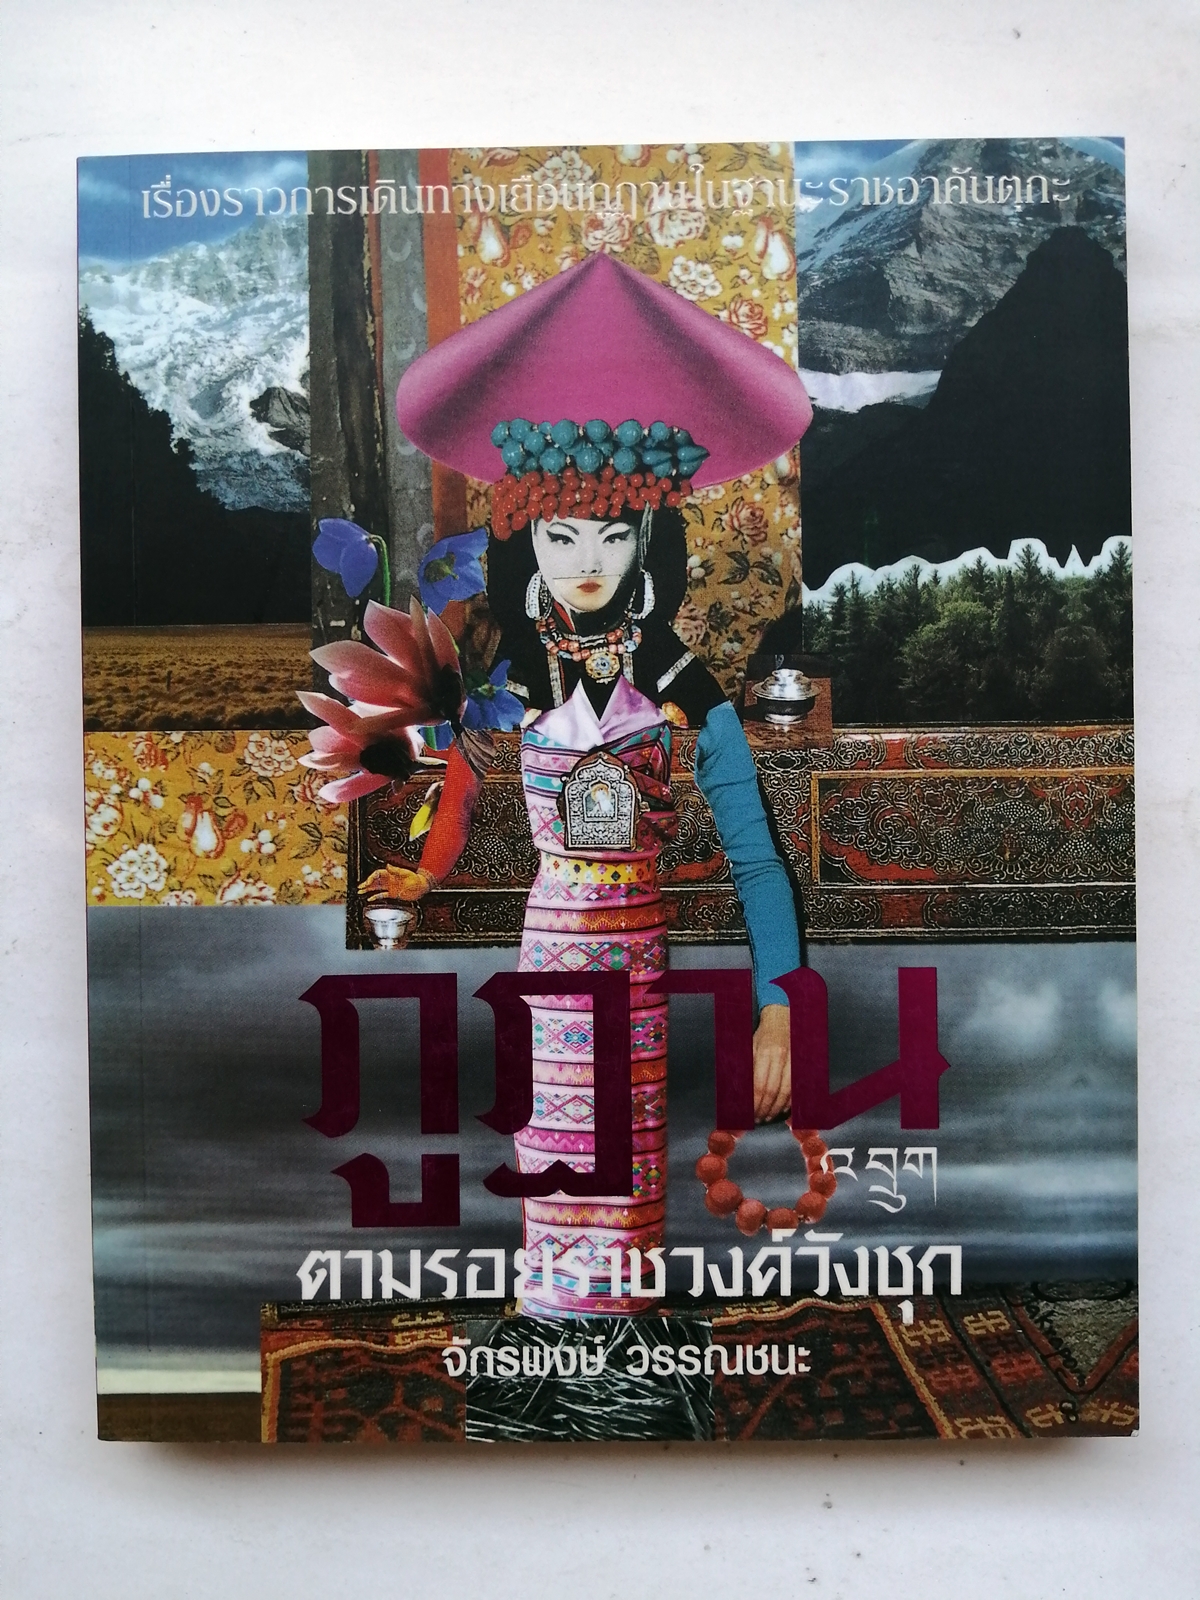 ภูฏาน ตามรอยราชวงศ์วังชุก โดย จักรพงษ์ วรรณชนะ